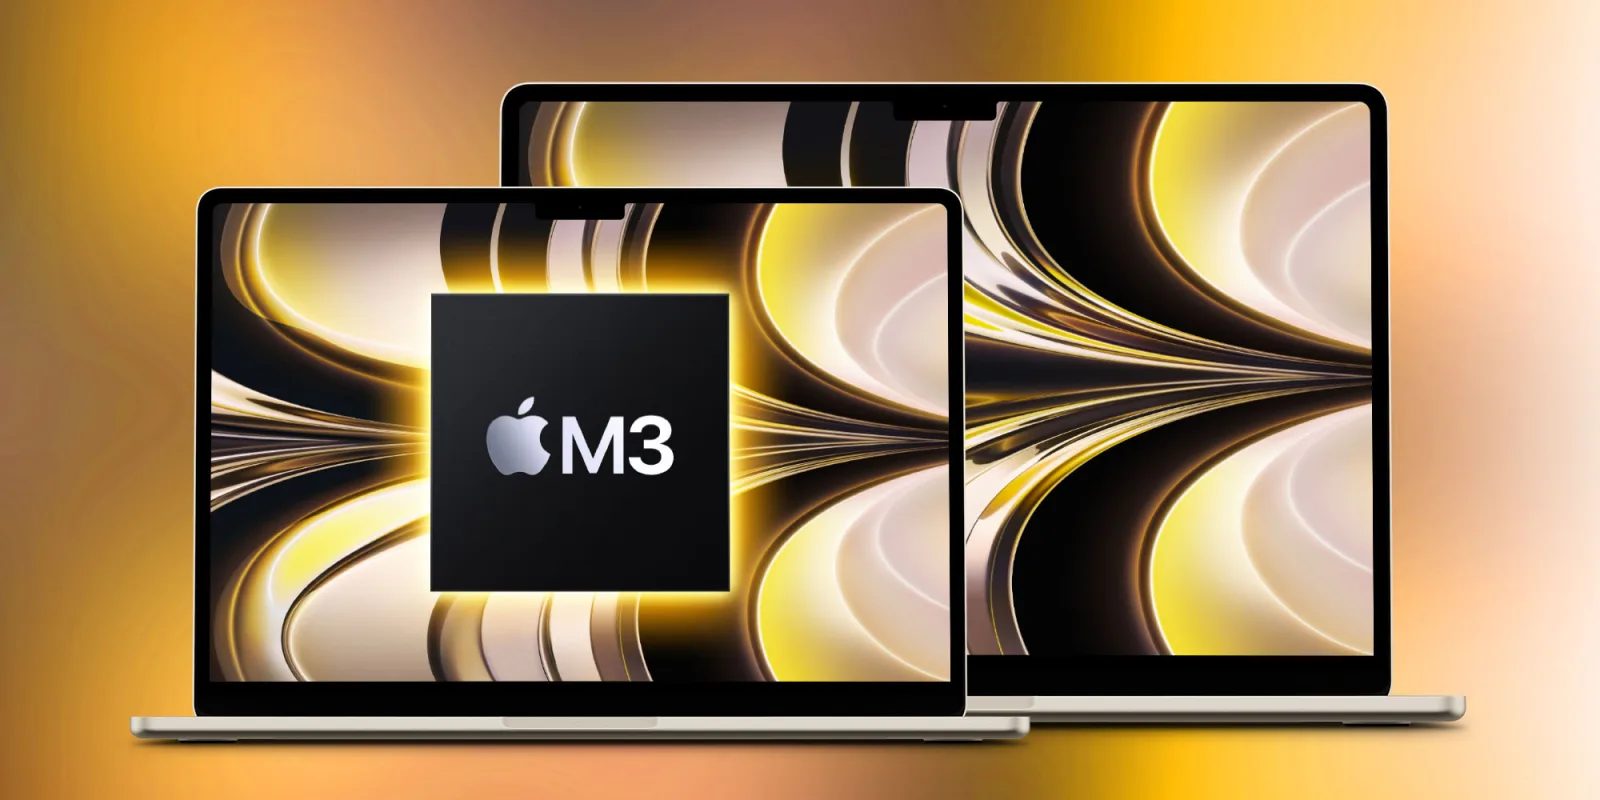 Tấm nền màn hình MacBook Air 15-inch được tăng tốc sản xuất chuẩn bị ra mắt thiết bị